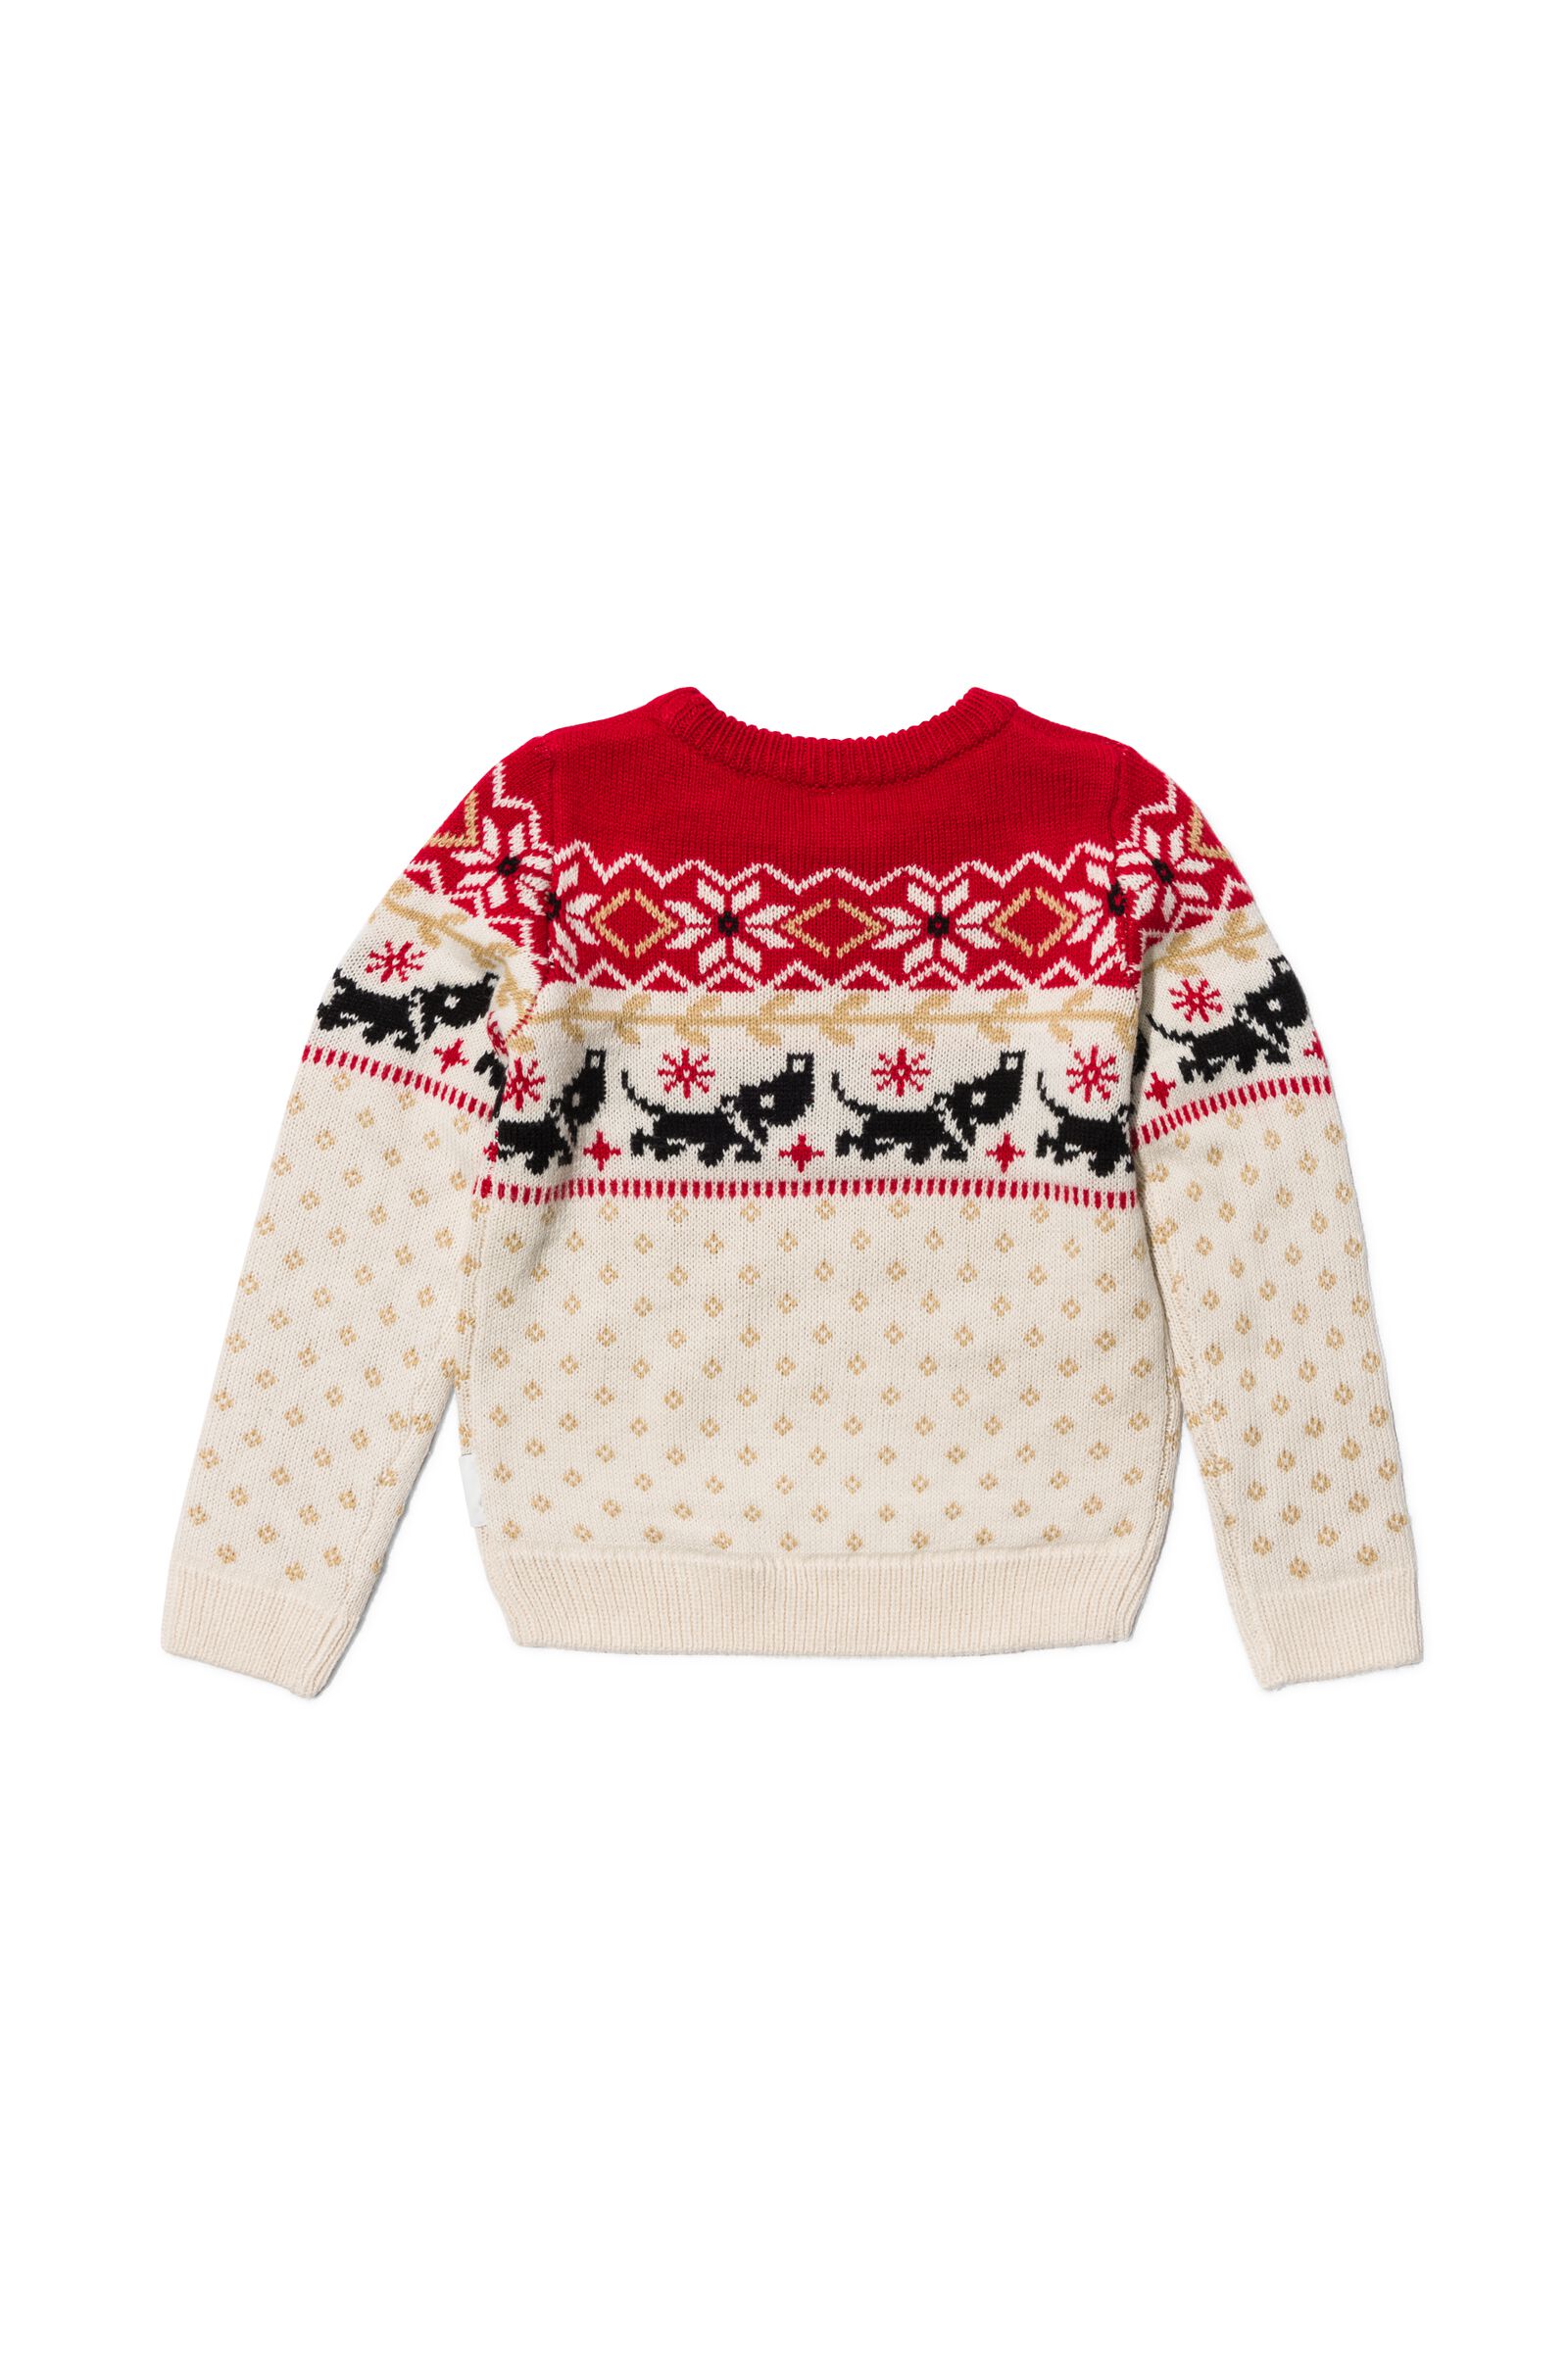 Takkie kinder kerst trui rood - 1000029905 - HEMA